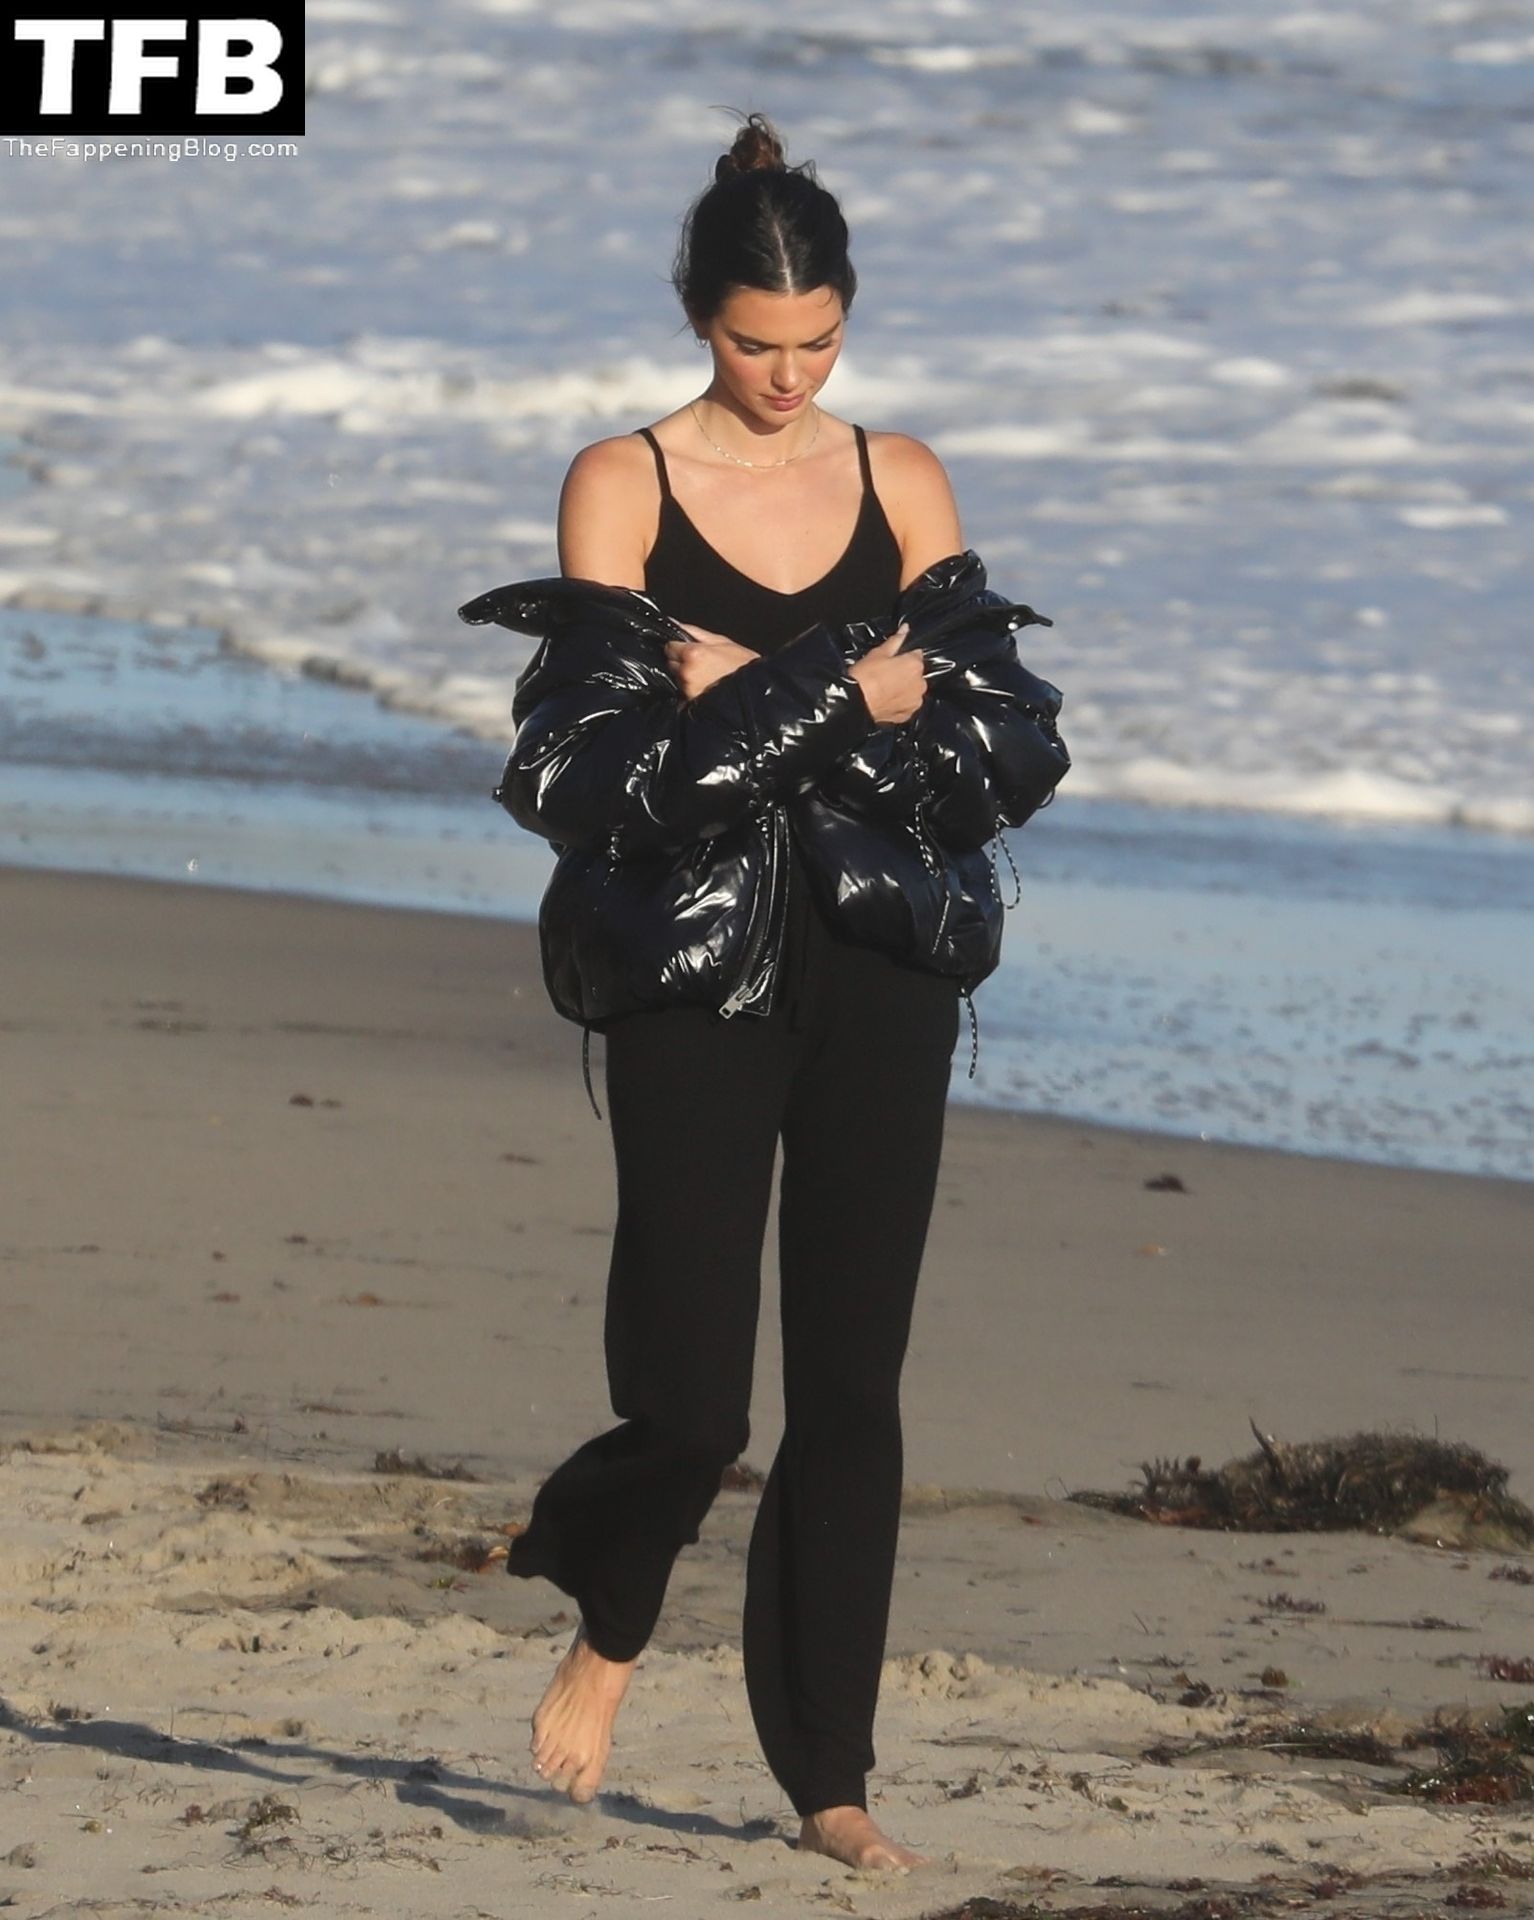 Kendall-Jenner-Feet-The-Fappening-Blog-32.jpg